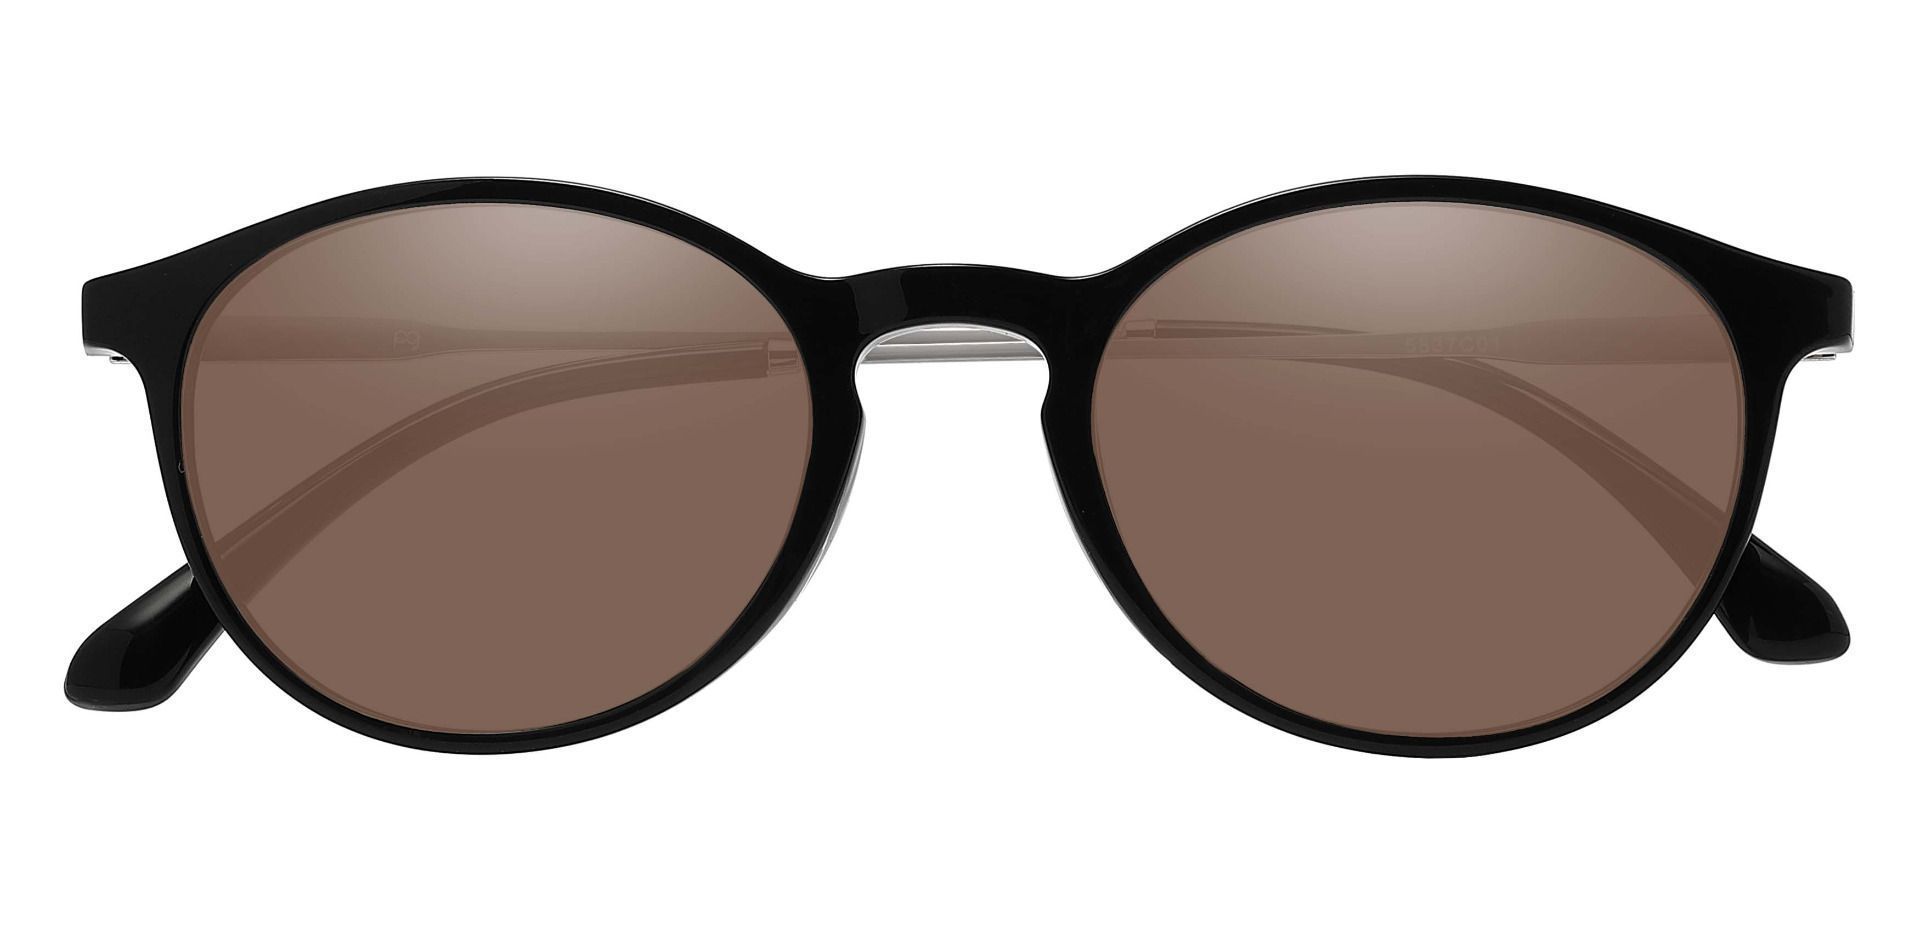 Felton Oval Progressive Sunglasses - Black Frame With Brown Lenses